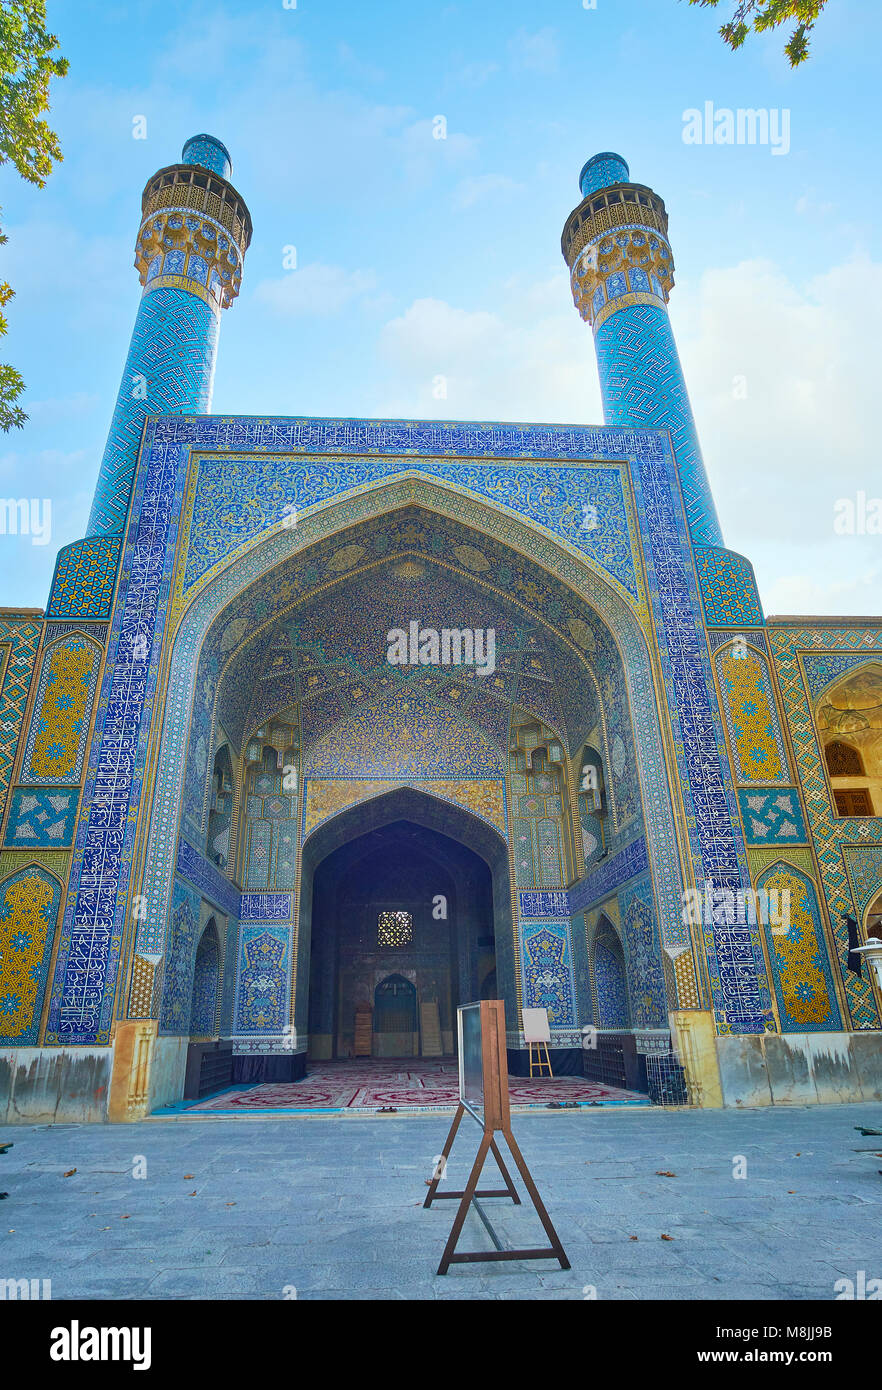 El gigante portal de entrada de la mezquita medieval de Chaharbagh madraseh  con dos delgados minaretes decorados con azulejos de color azul brillante,  patrones de Isfa Fotografía de stock - Alamy